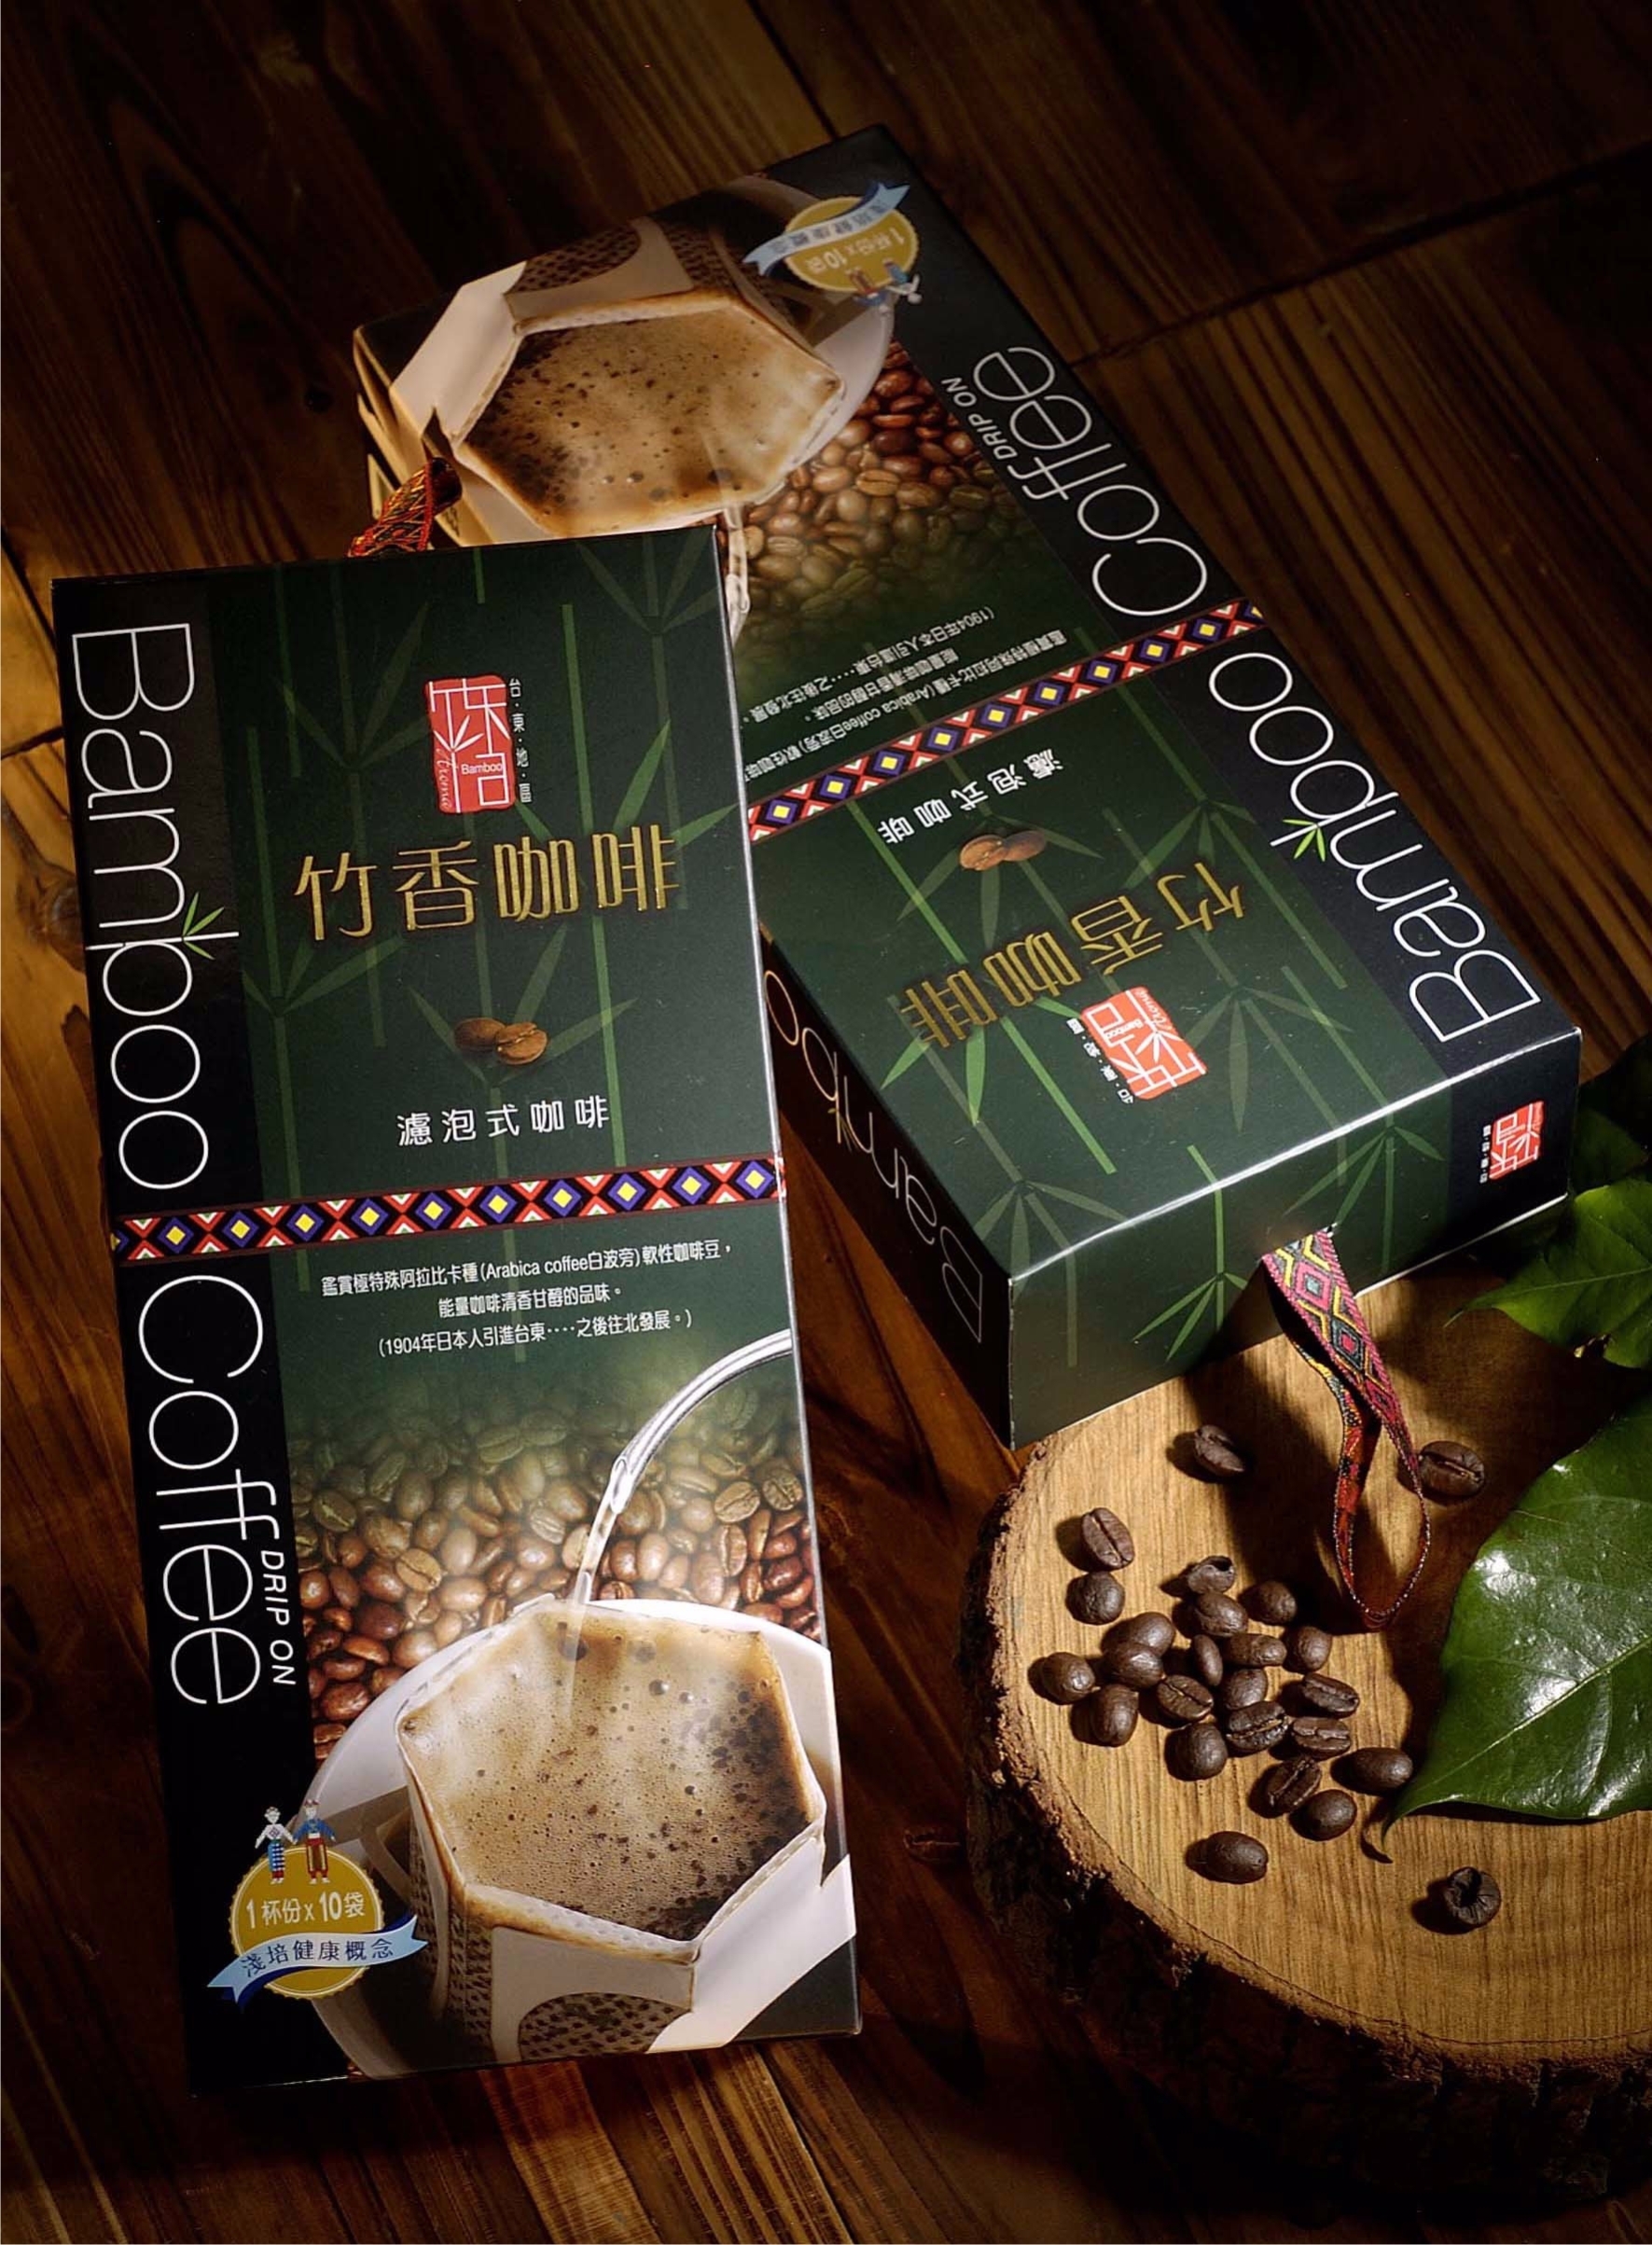 【山豬園咖啡】台東竹香咖啡&lt;濾泡式禮盒10入裝&gt;